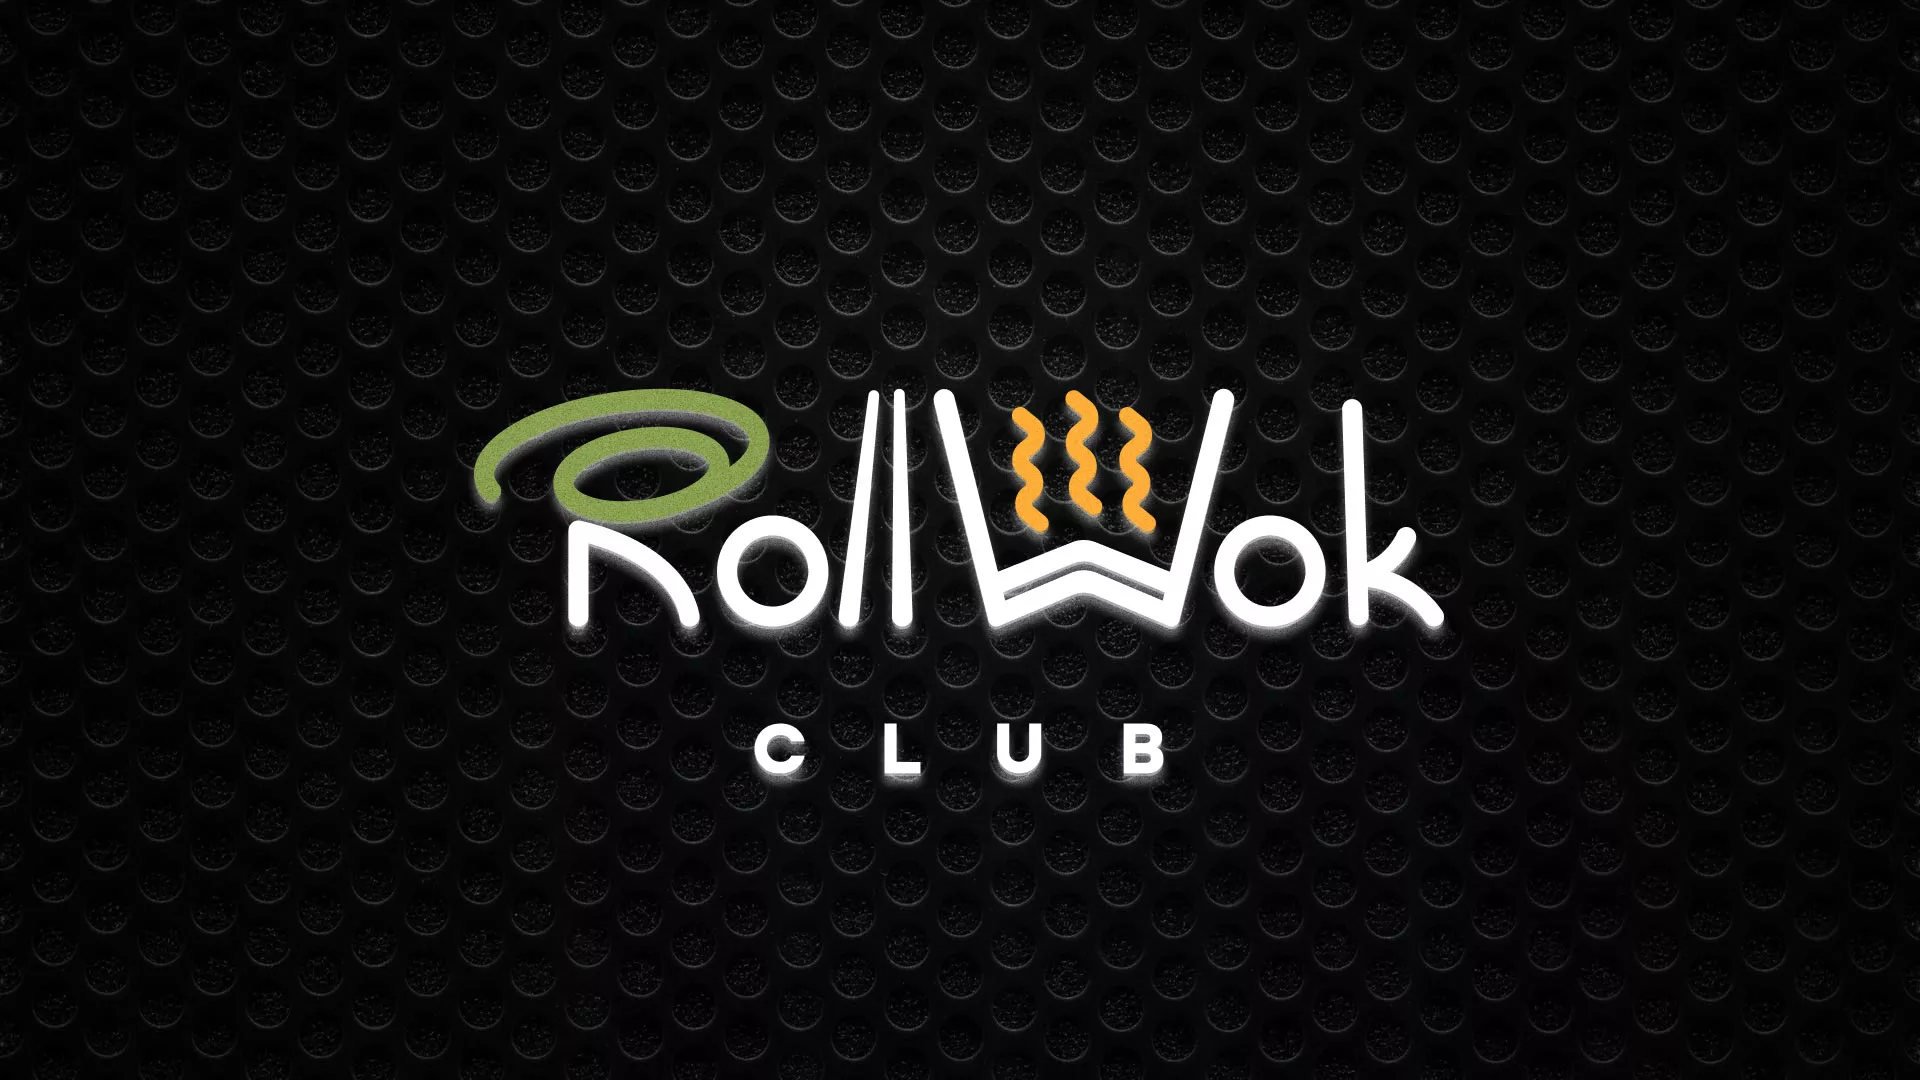 Брендирование торговых точек суши-бара «Roll Wok Club» в Мариинске